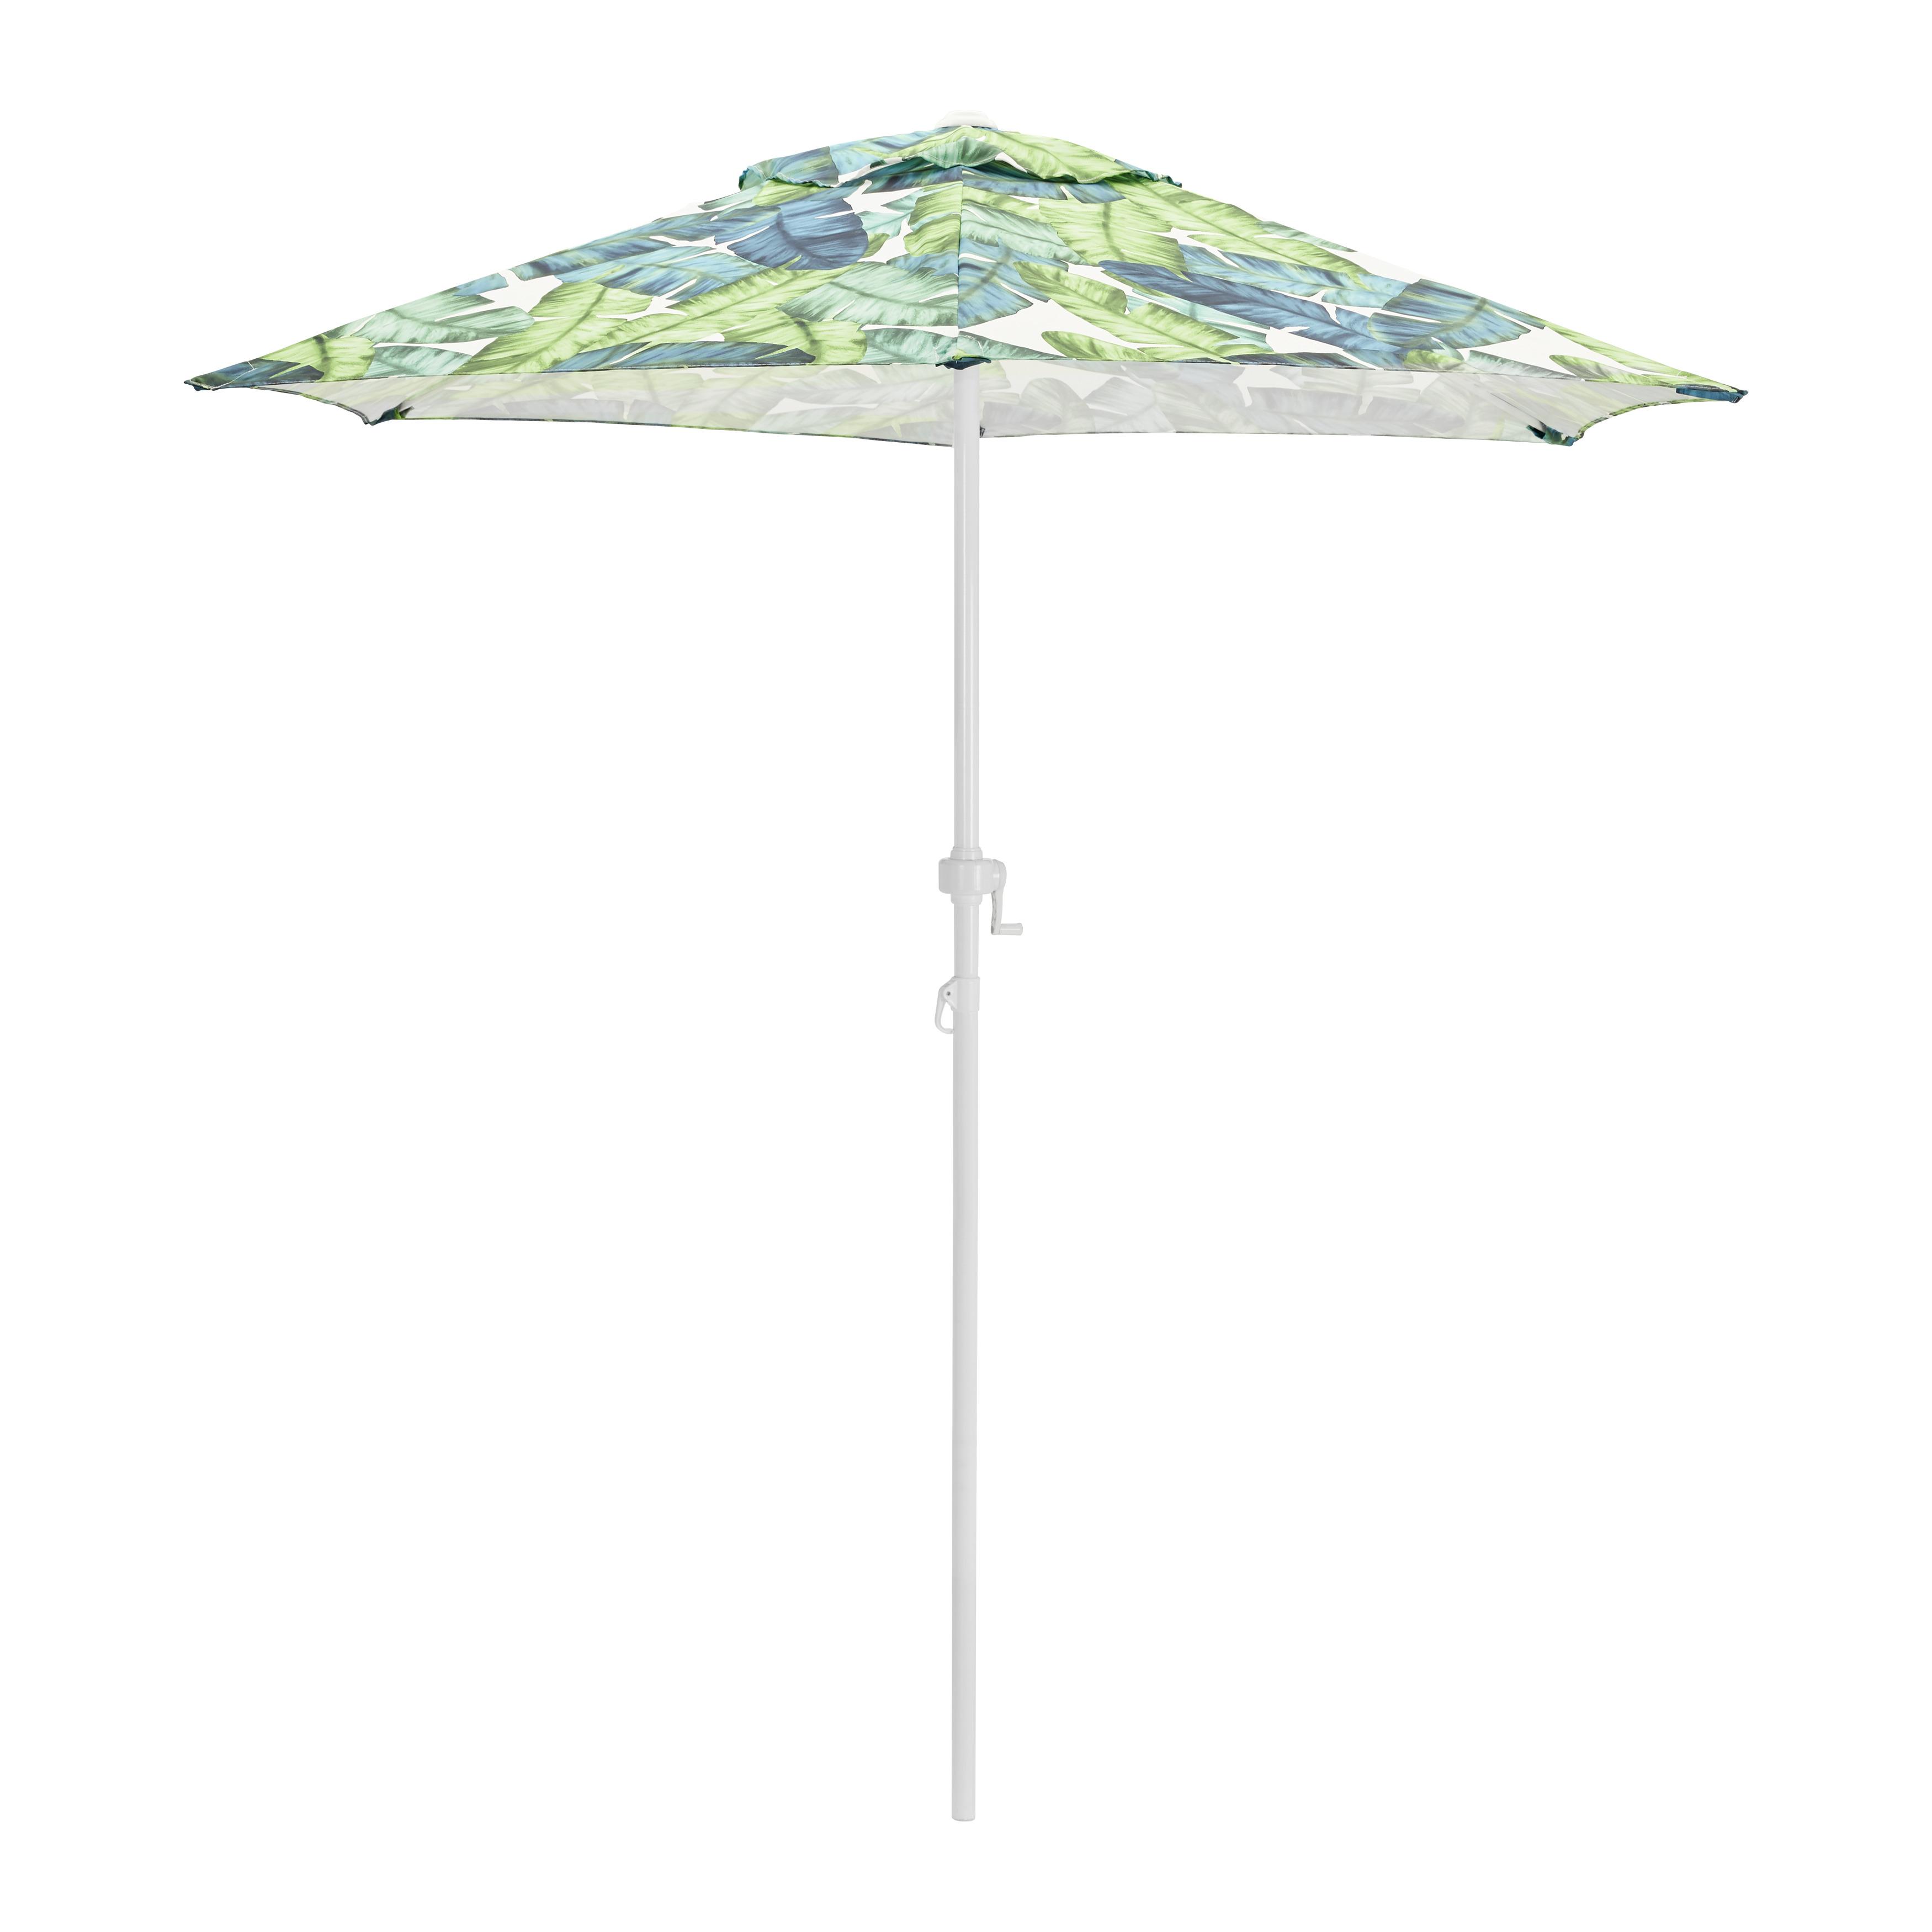 Sonnenschirm "Patricia" ca. 200 cm, blau/grün - Blau/Weiß, MODERN, Kunststoff/Textil (200cm) - Bessagi Garden